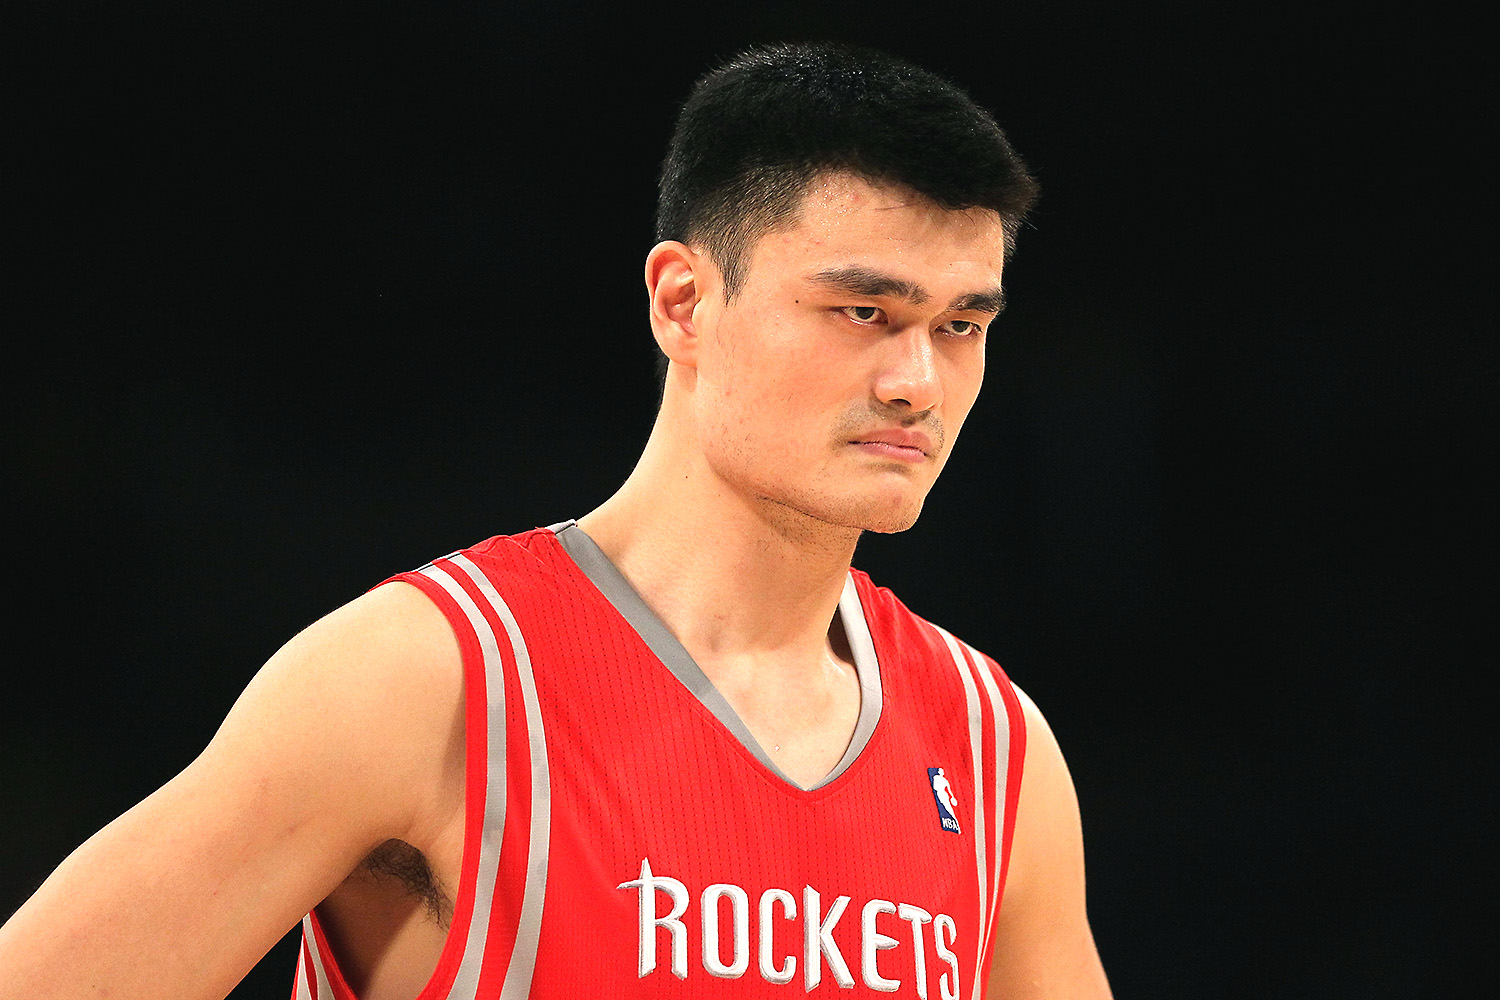 NBA entra em crise diplomática com a China após dirigente apoiar Hong Kong